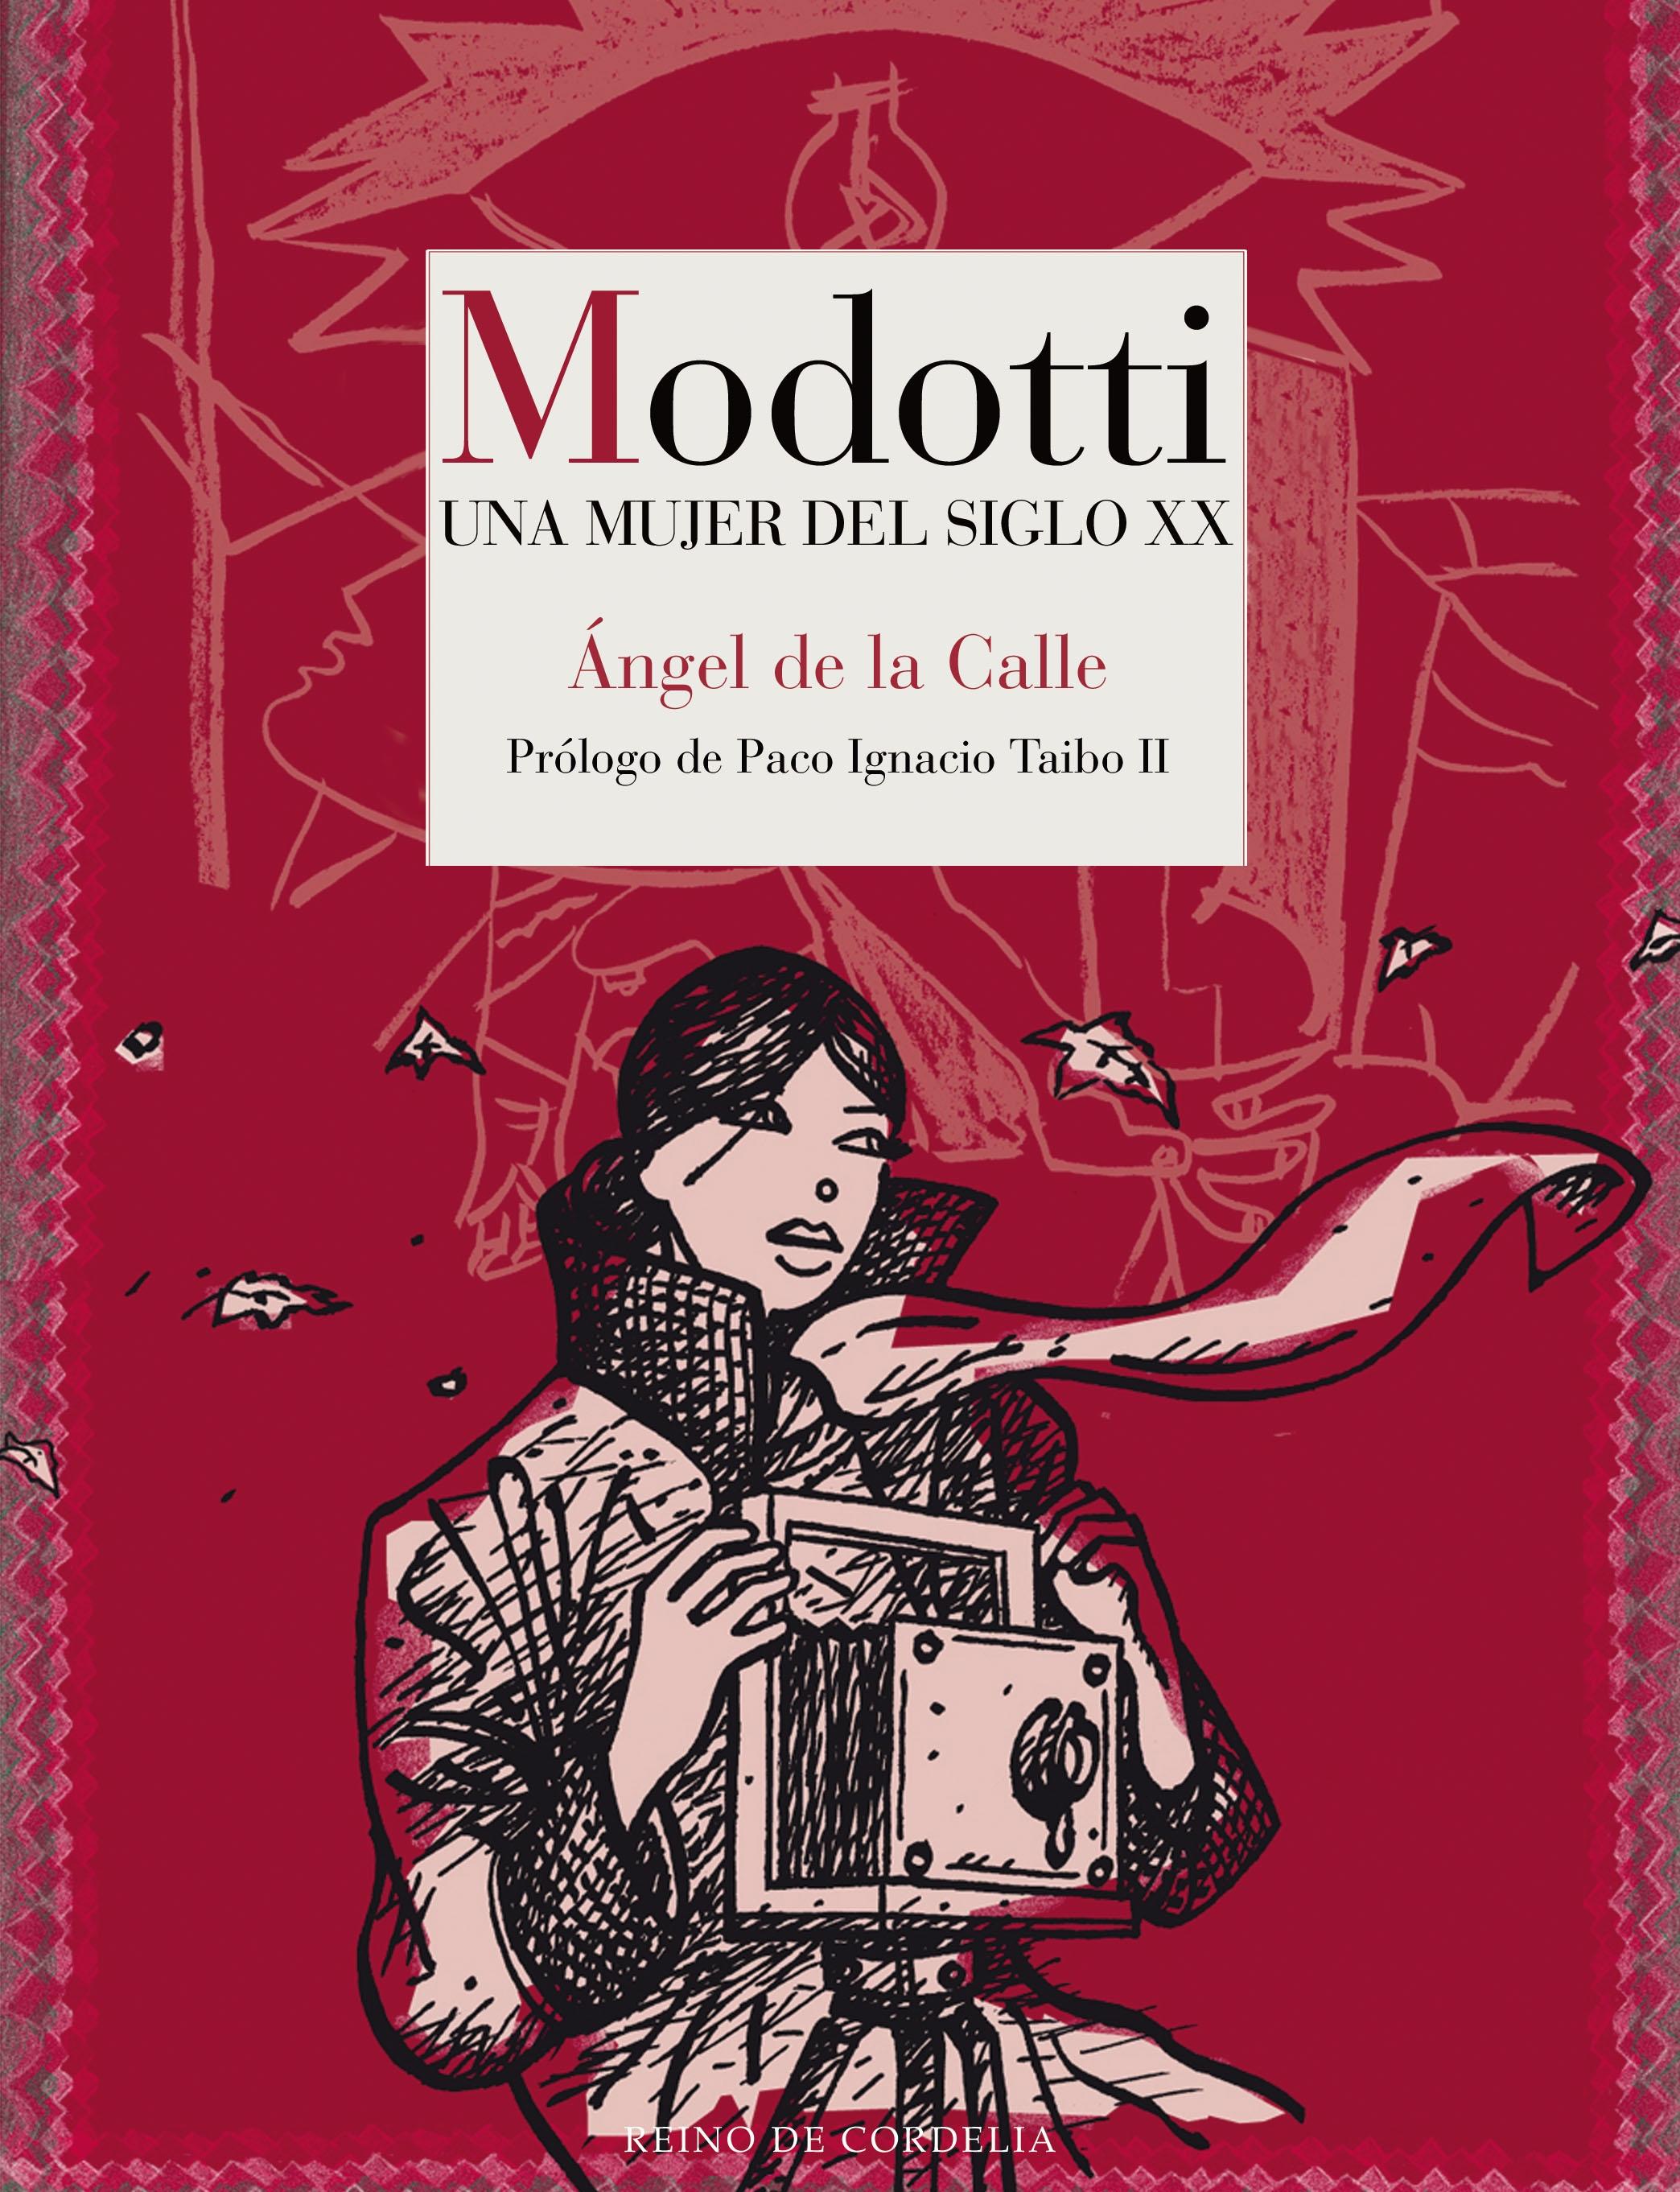 Modotti "Una mujer del siglo XX"